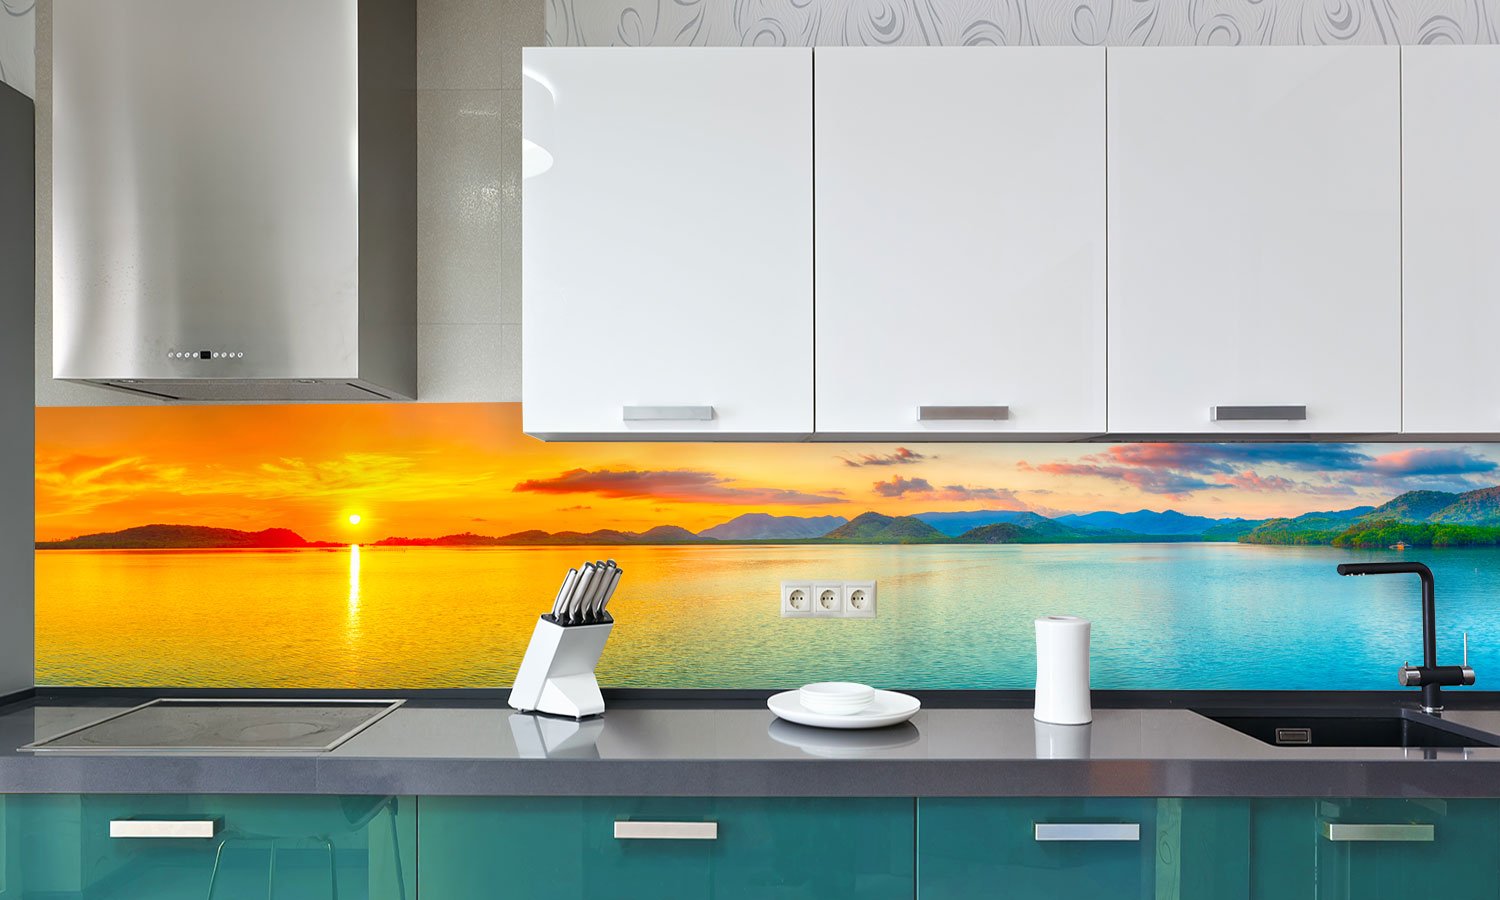 Kuhinjski paneli Amazing landscape  - Stekleni / PVC plošče / Pleksi steklo - s tiskom za kuhinjo, Stenske obloge PKU006 - Life-decor.si